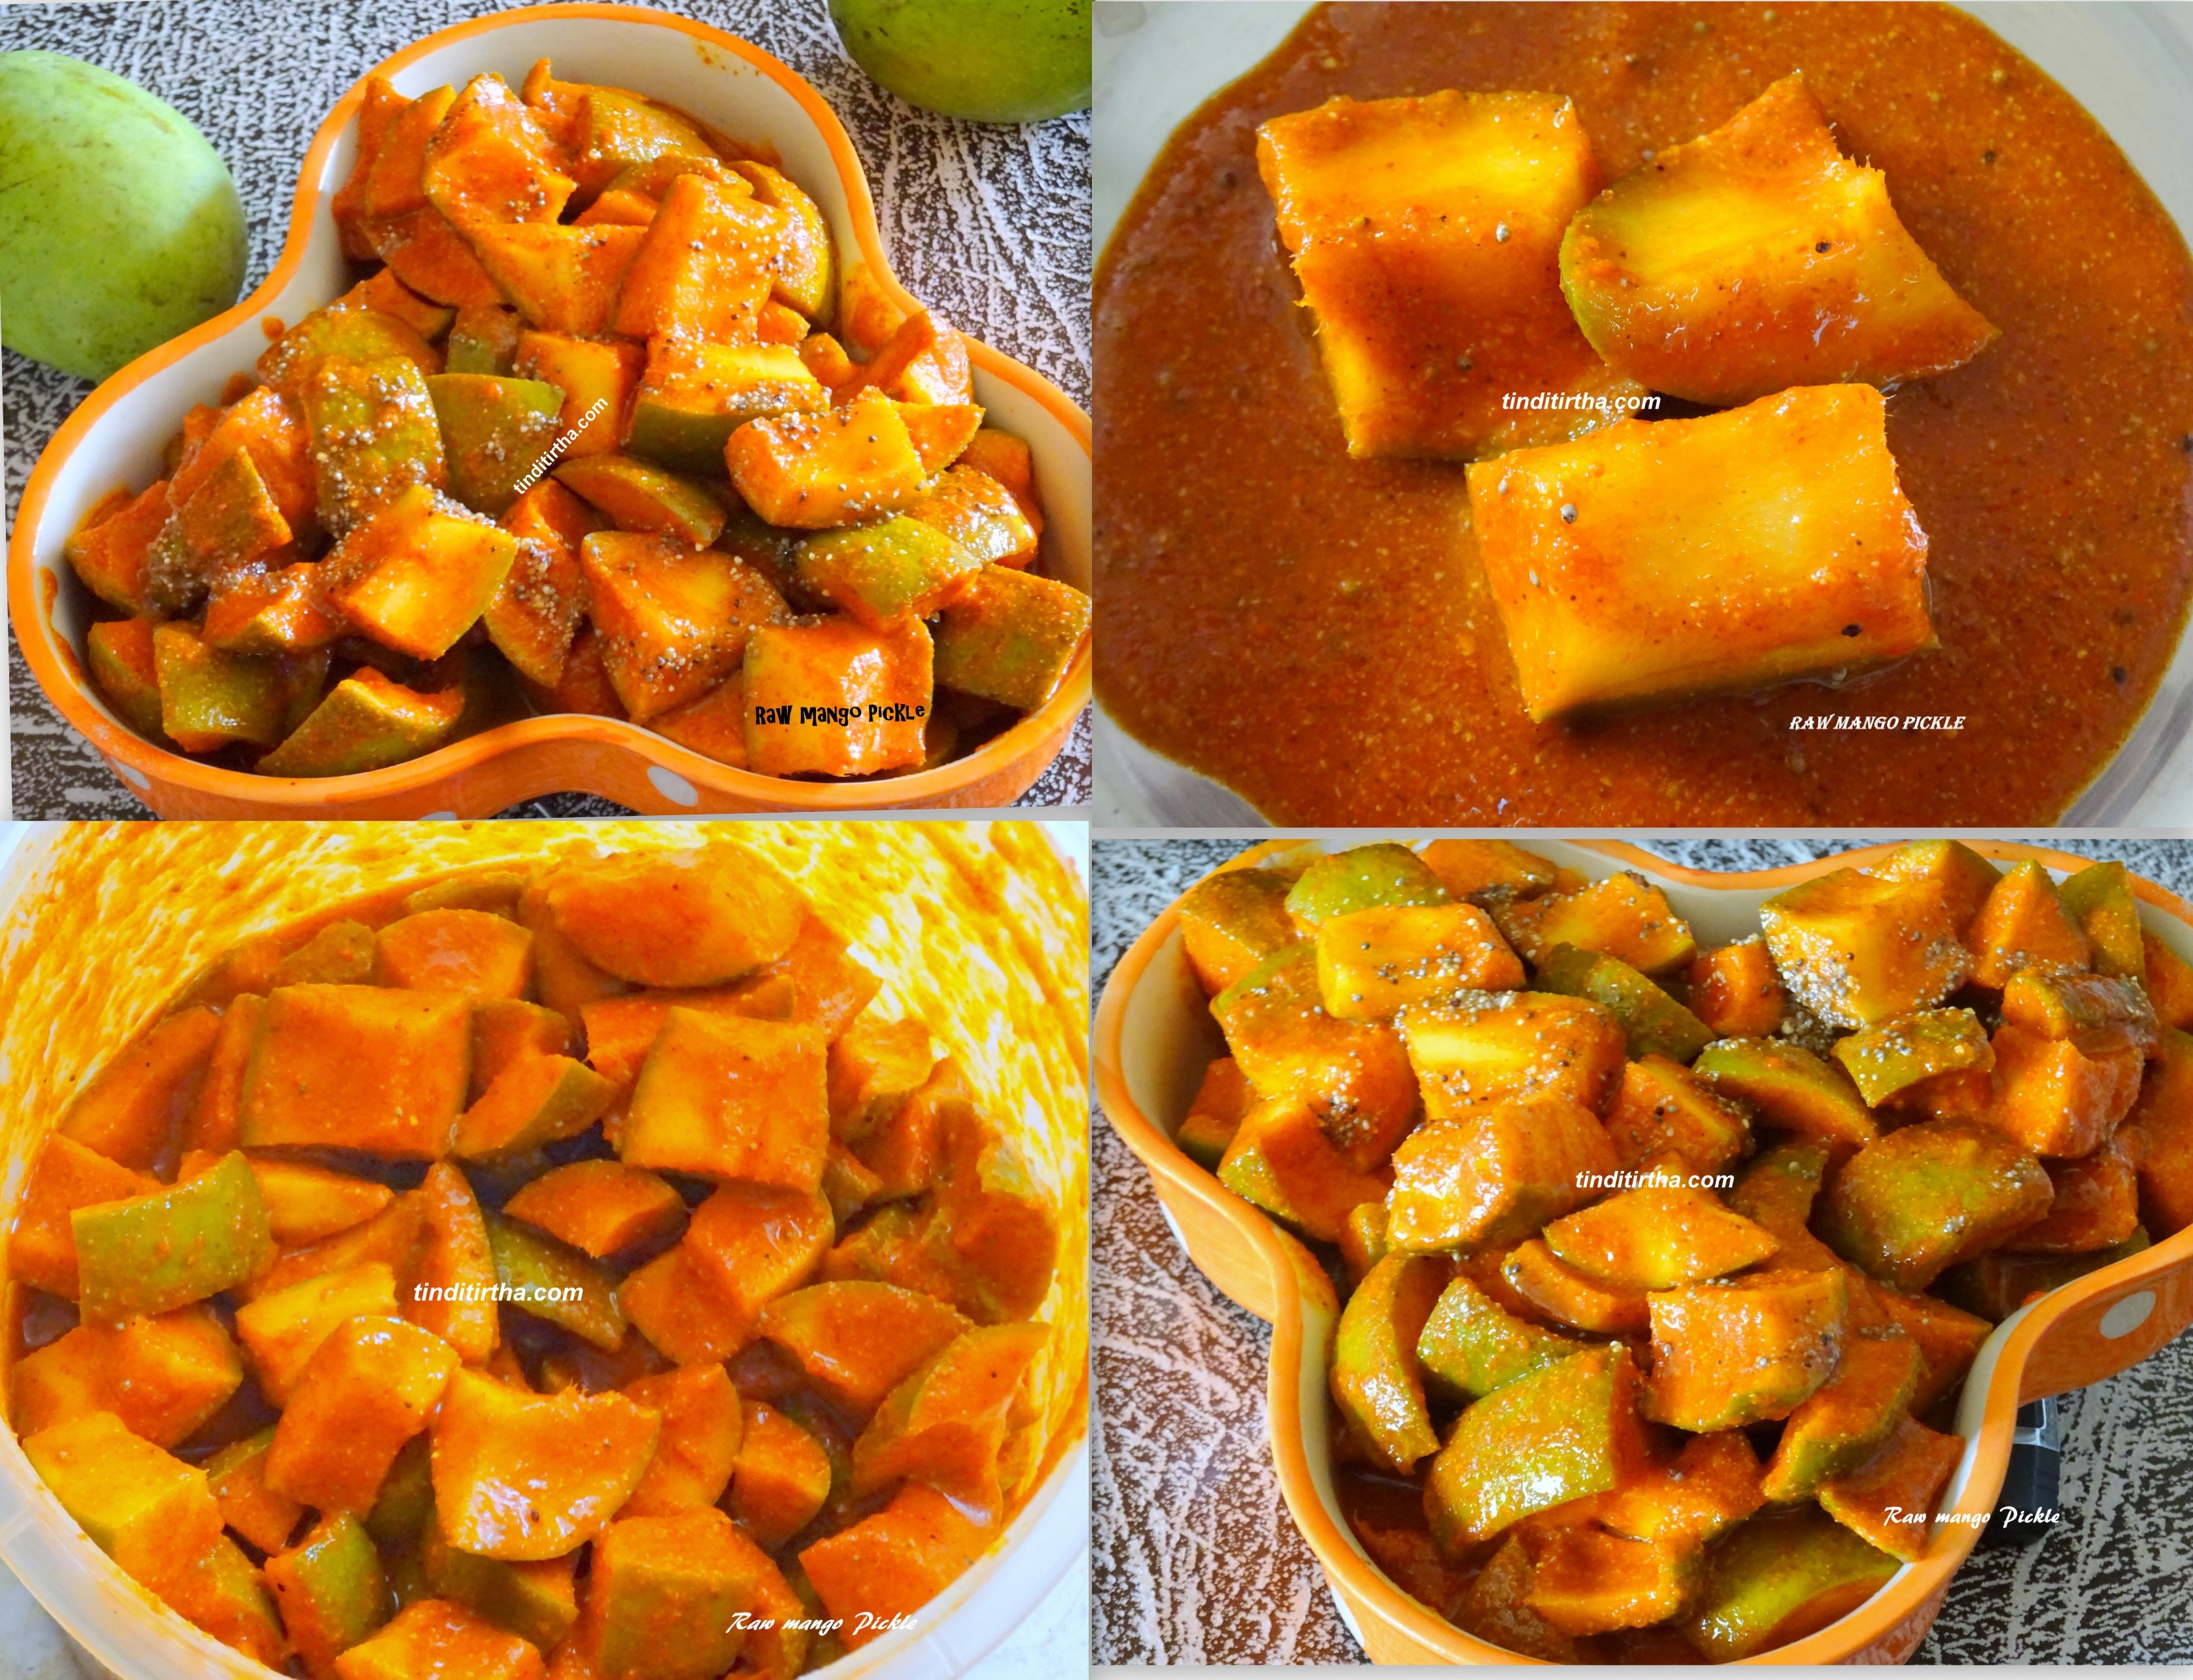 Raw mango pickle| mavina kayi uppinakayi